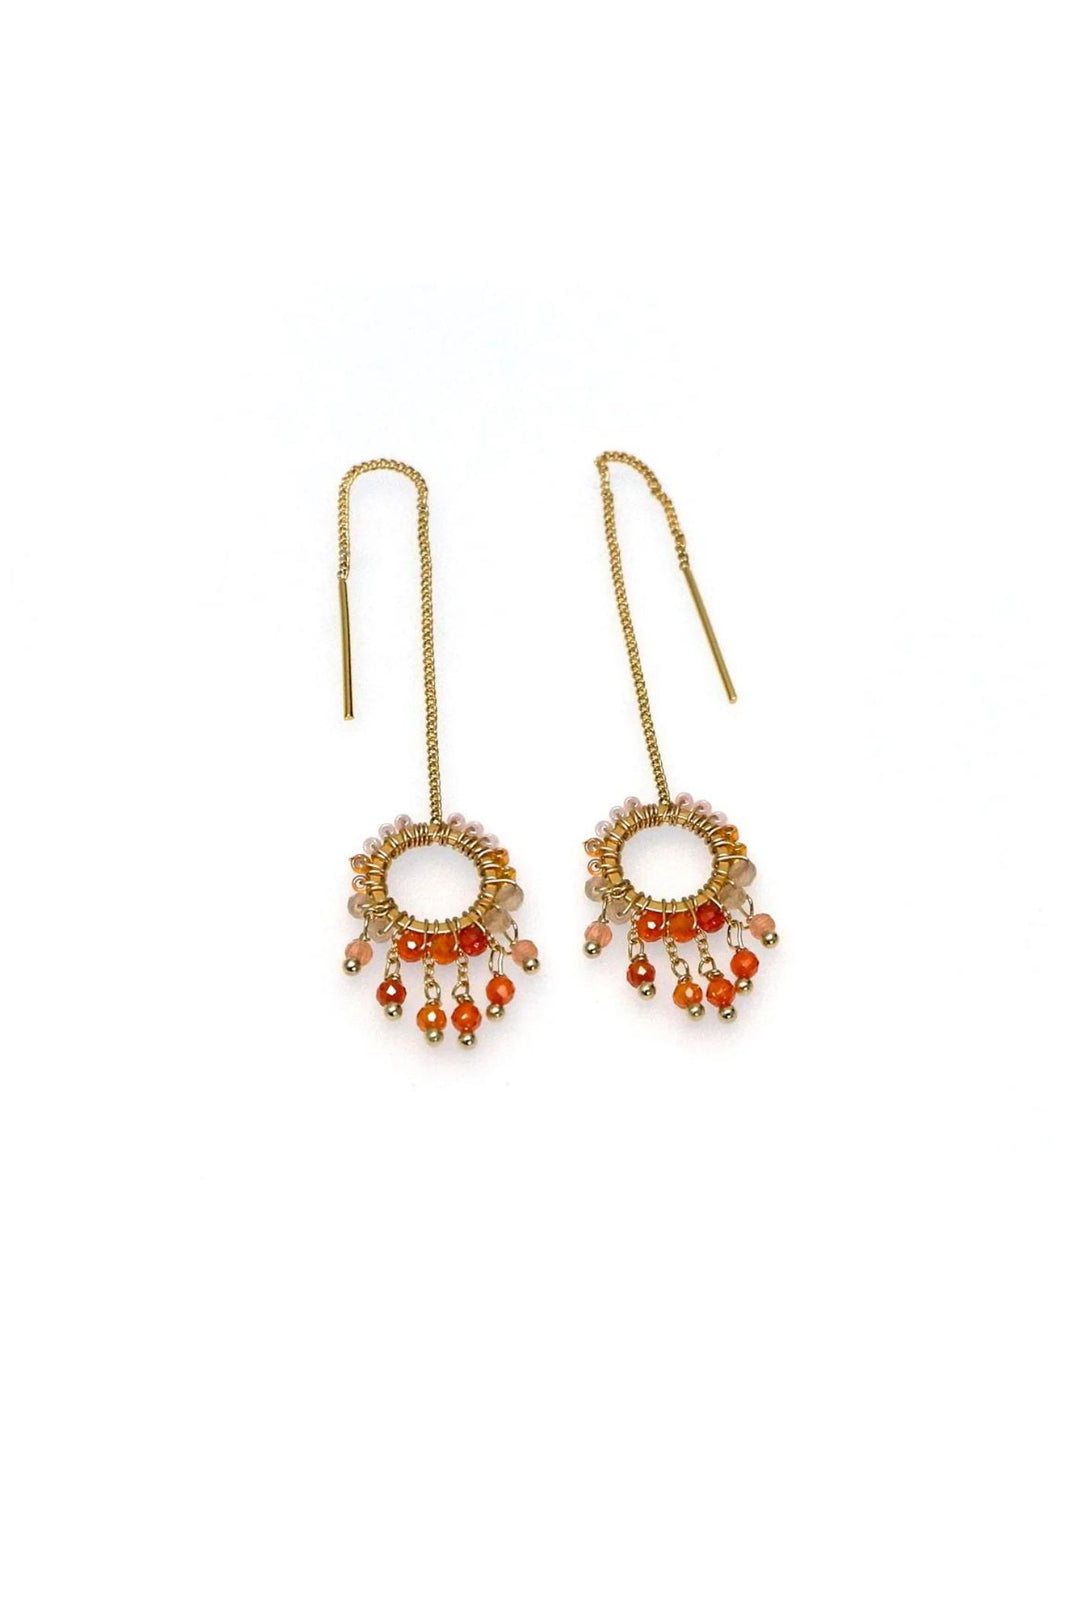 Annabella Moore LFE22-OR Orange Bead Drop Earrings